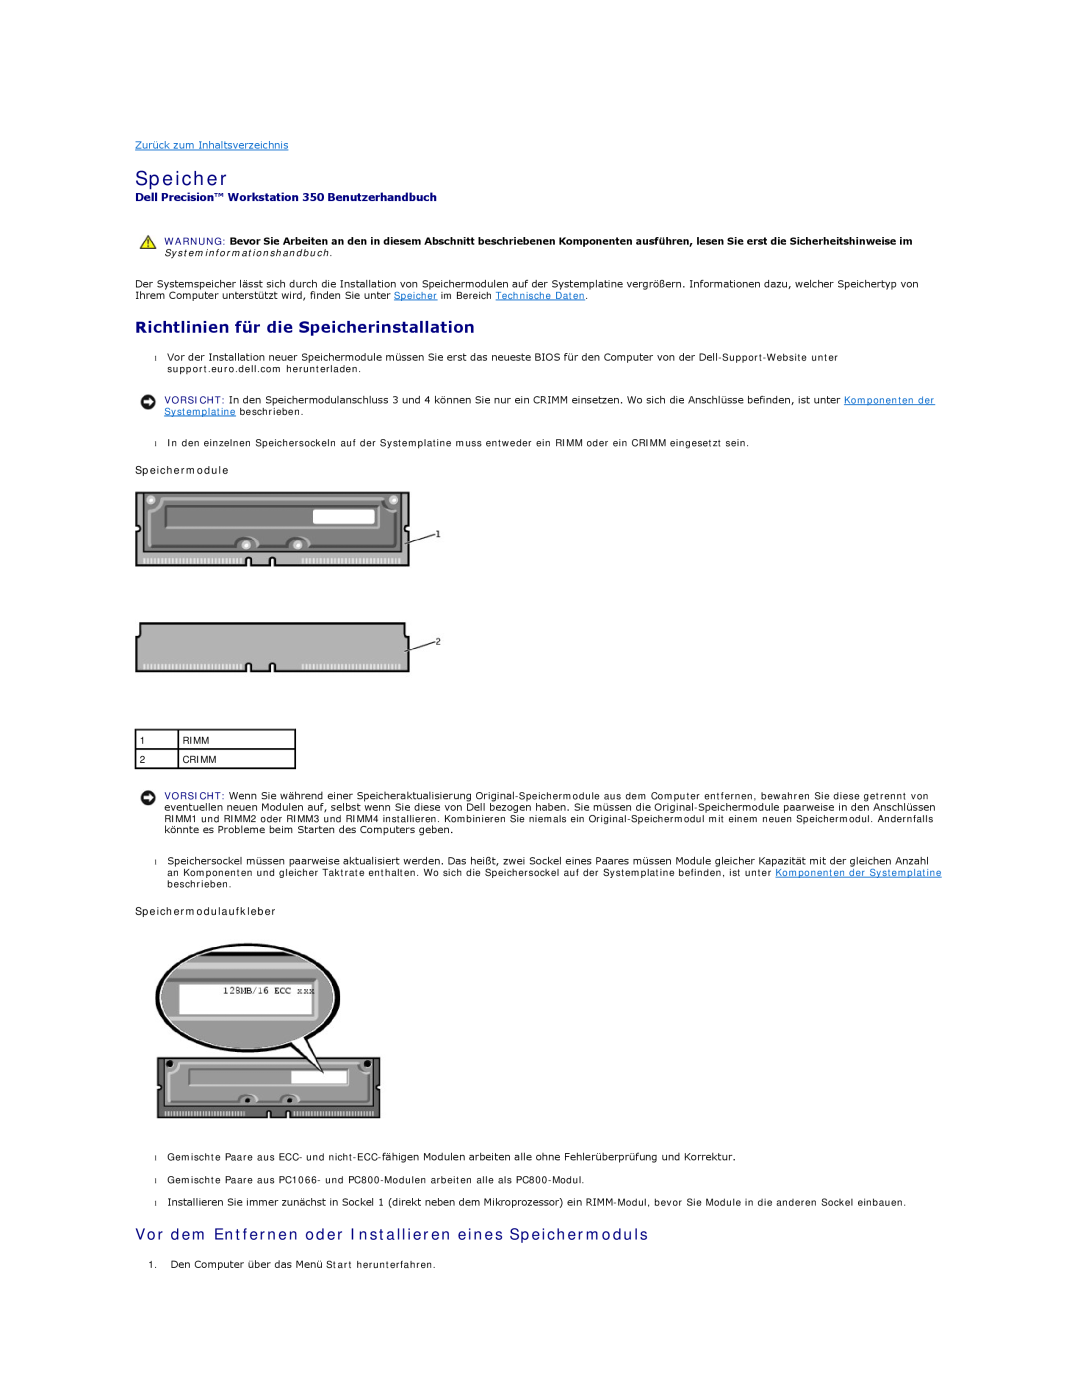 Dell manual Richtlinien für die Speicherinstallation, Dell Precision Workstation 350 Benutzerhandbuch 